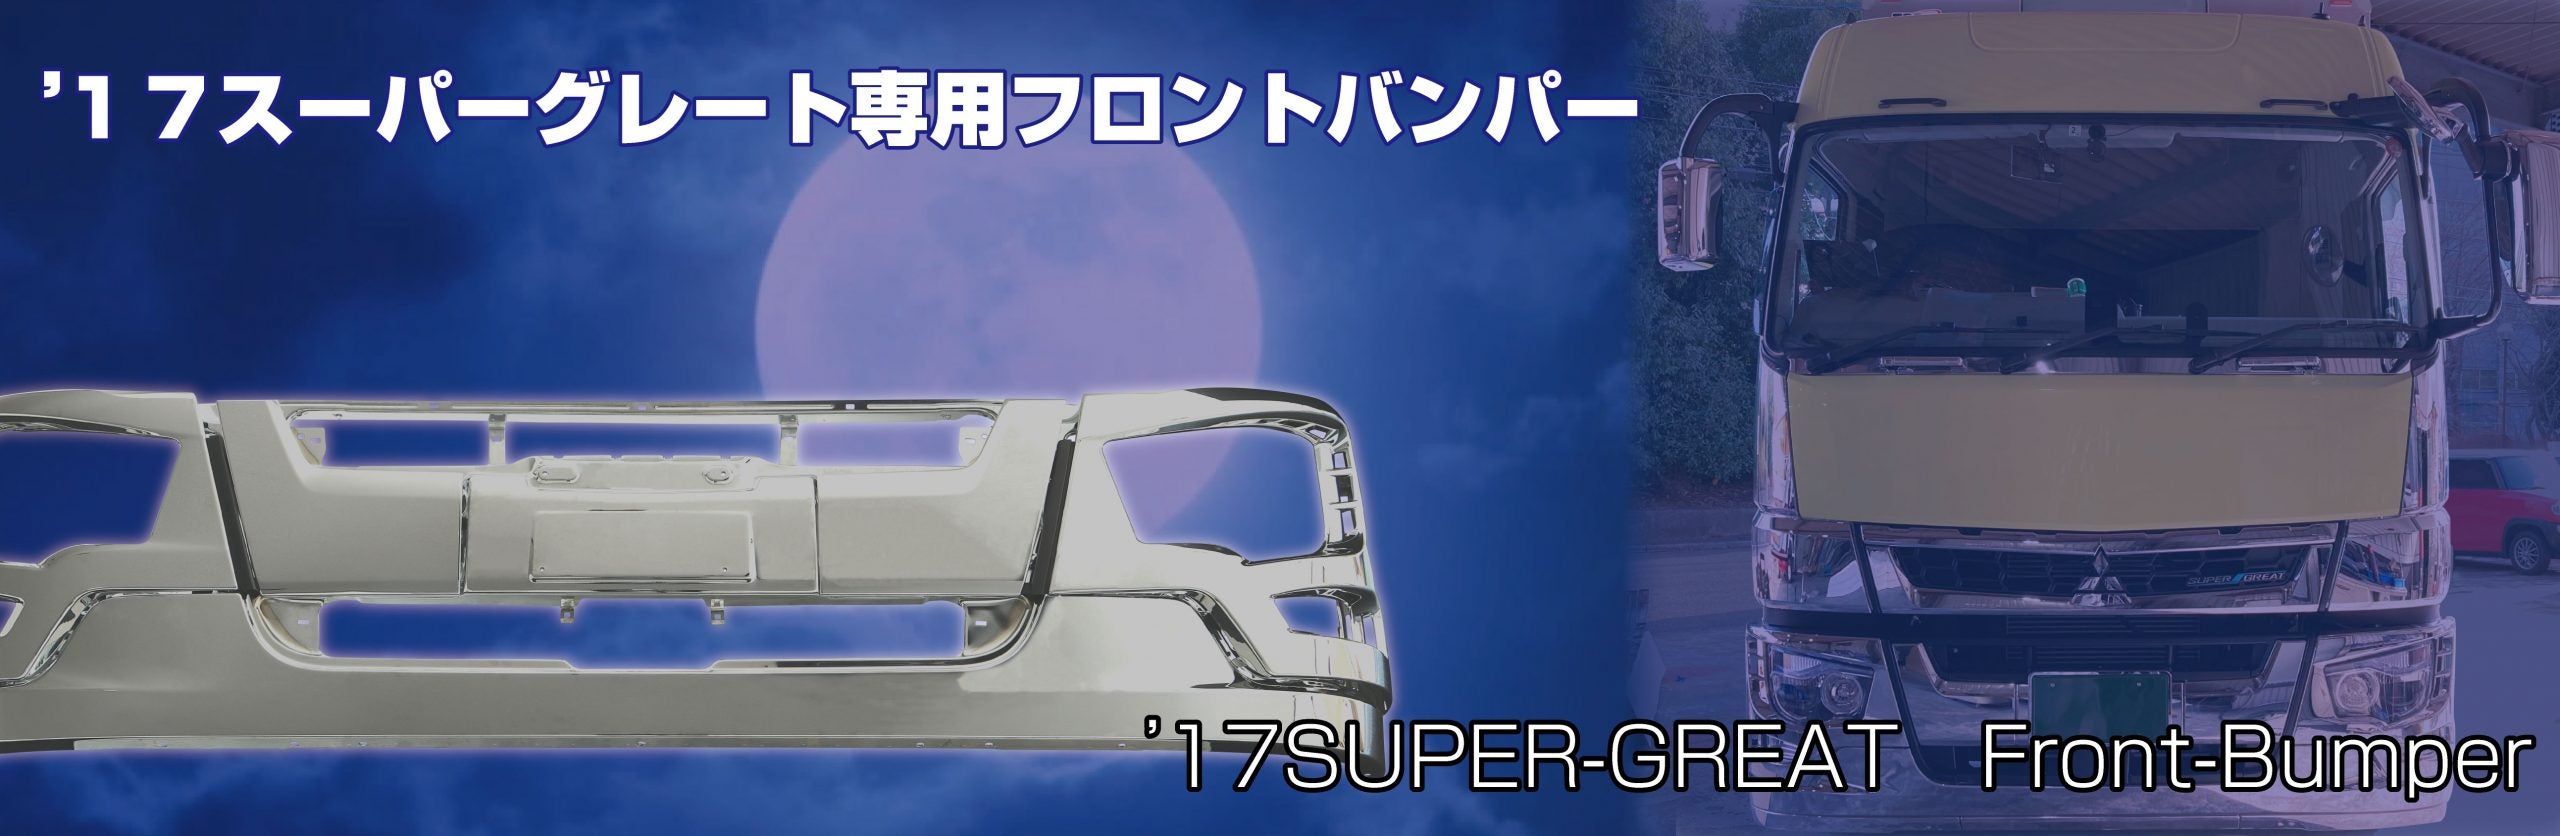 17スーパーグレートフロントバンパー　標準キャブ車